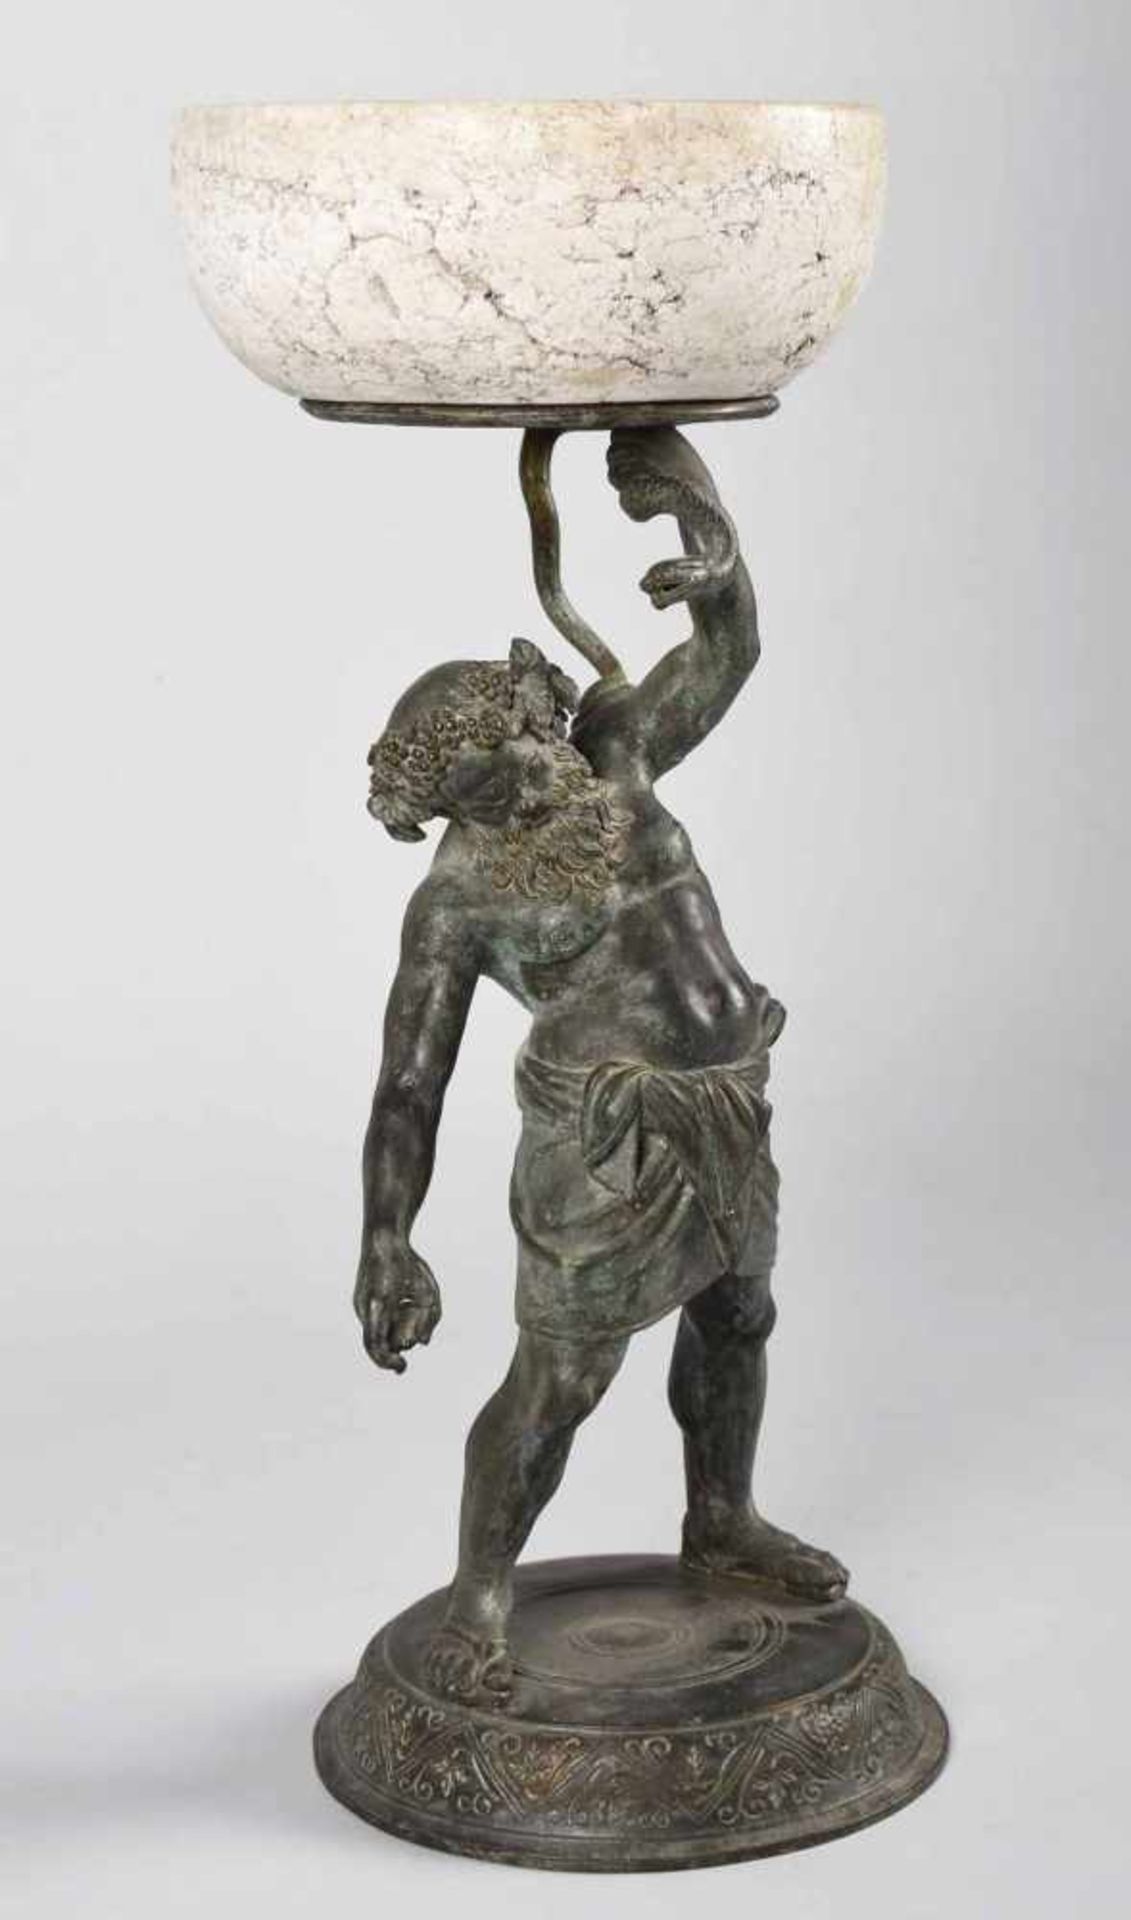 Zierfigur nach Michele Amodio Bronze, in Schwarzbraun patiniert, bärtiger Bacchus mit Hüfttuch und - Bild 3 aus 4